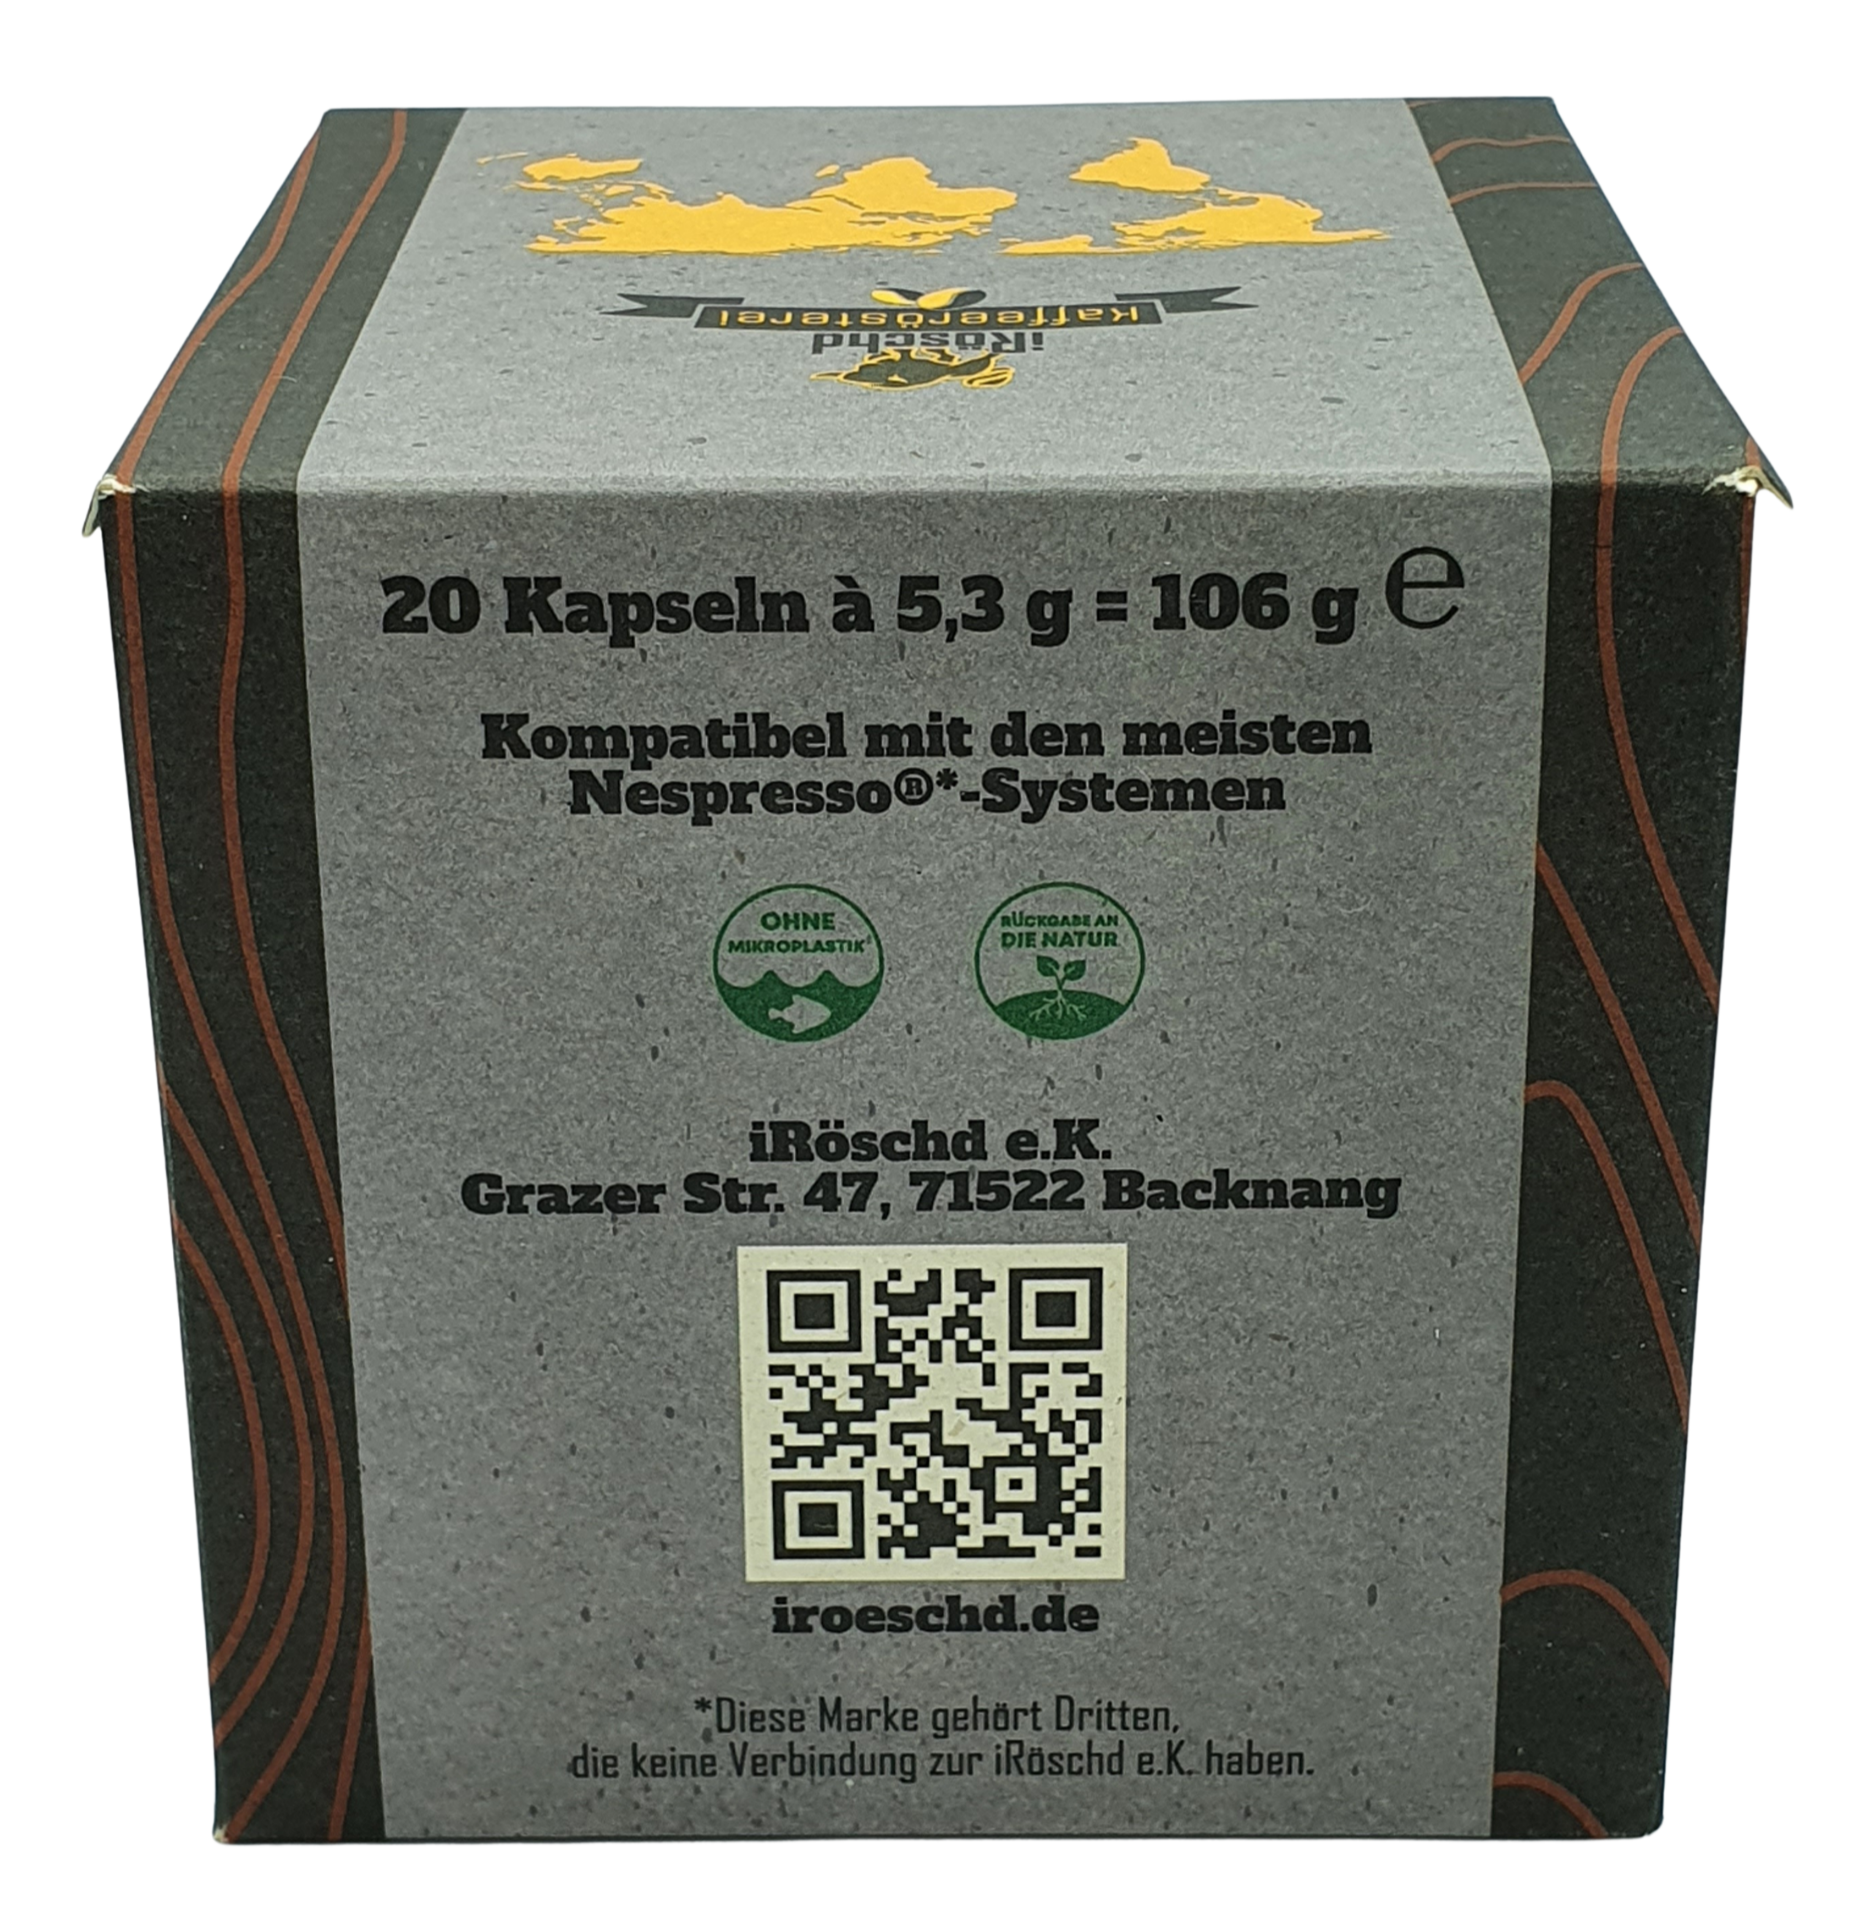 Spezialitätenkaffee (Specialty Coffee) in Holzkapseln für Nespressomaschinen. Sie lassen sich in der Biotonne entsorgen. 100% nachhaltig und nachwachsend.